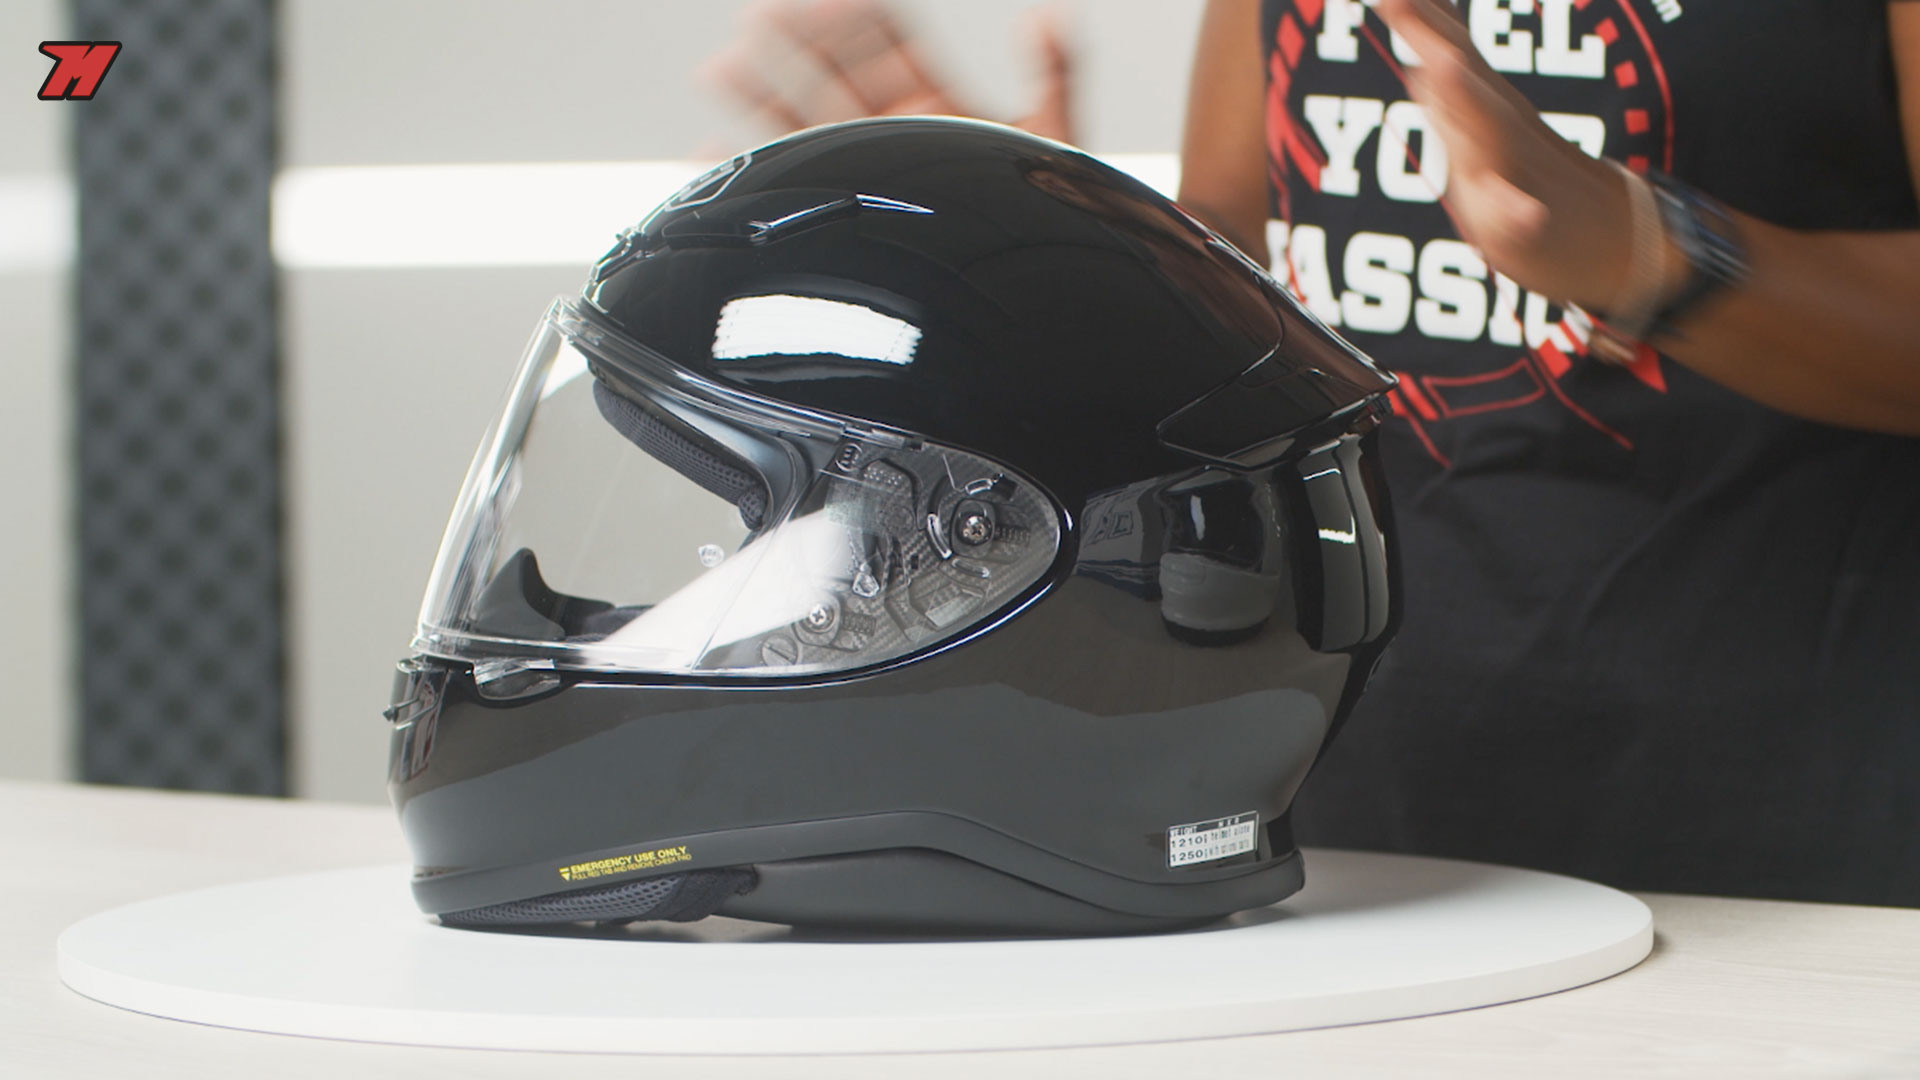 Top 9 cascos de moto para mujer, el · Motocard